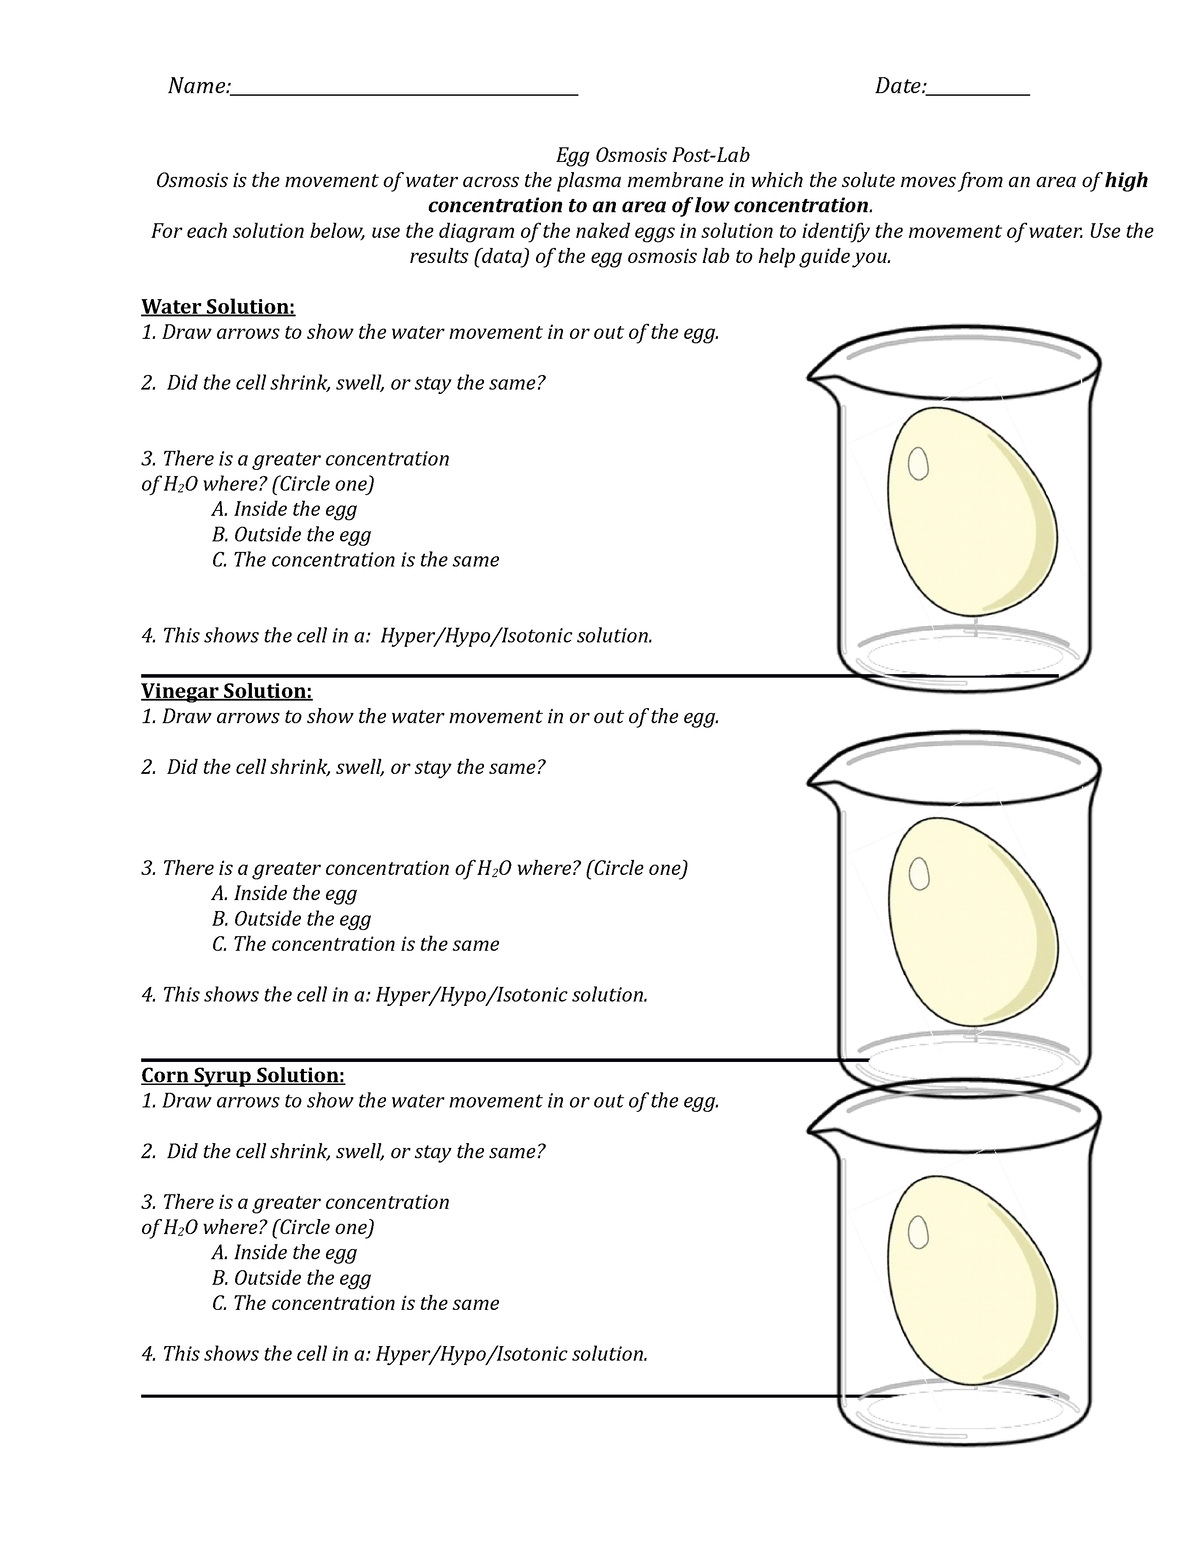 egg osmosis diagram